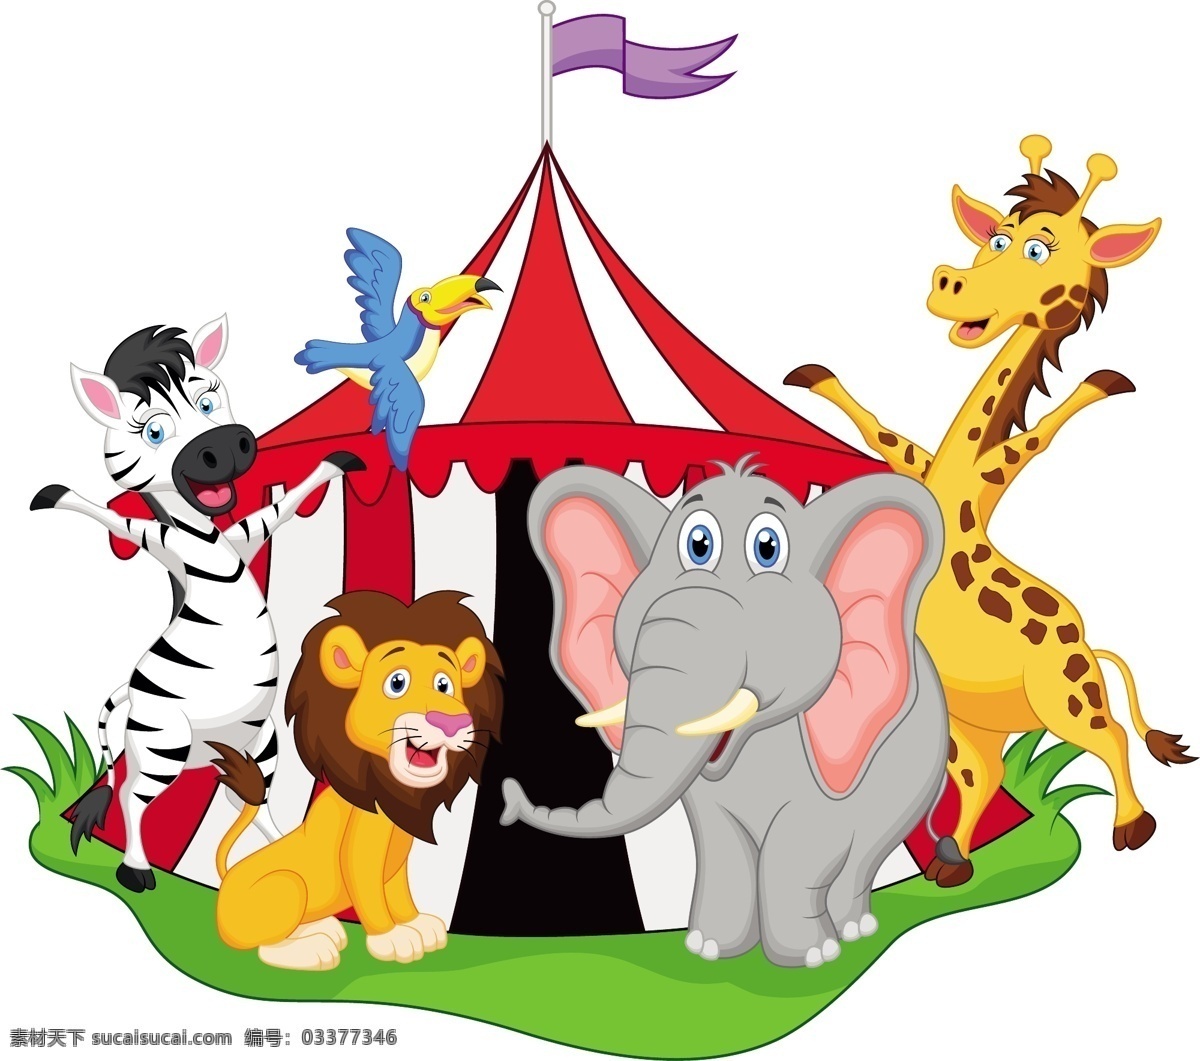 马戏团 小丑 帐篷 表演 大象 动物 矢量素材 装饰图案 设计元素